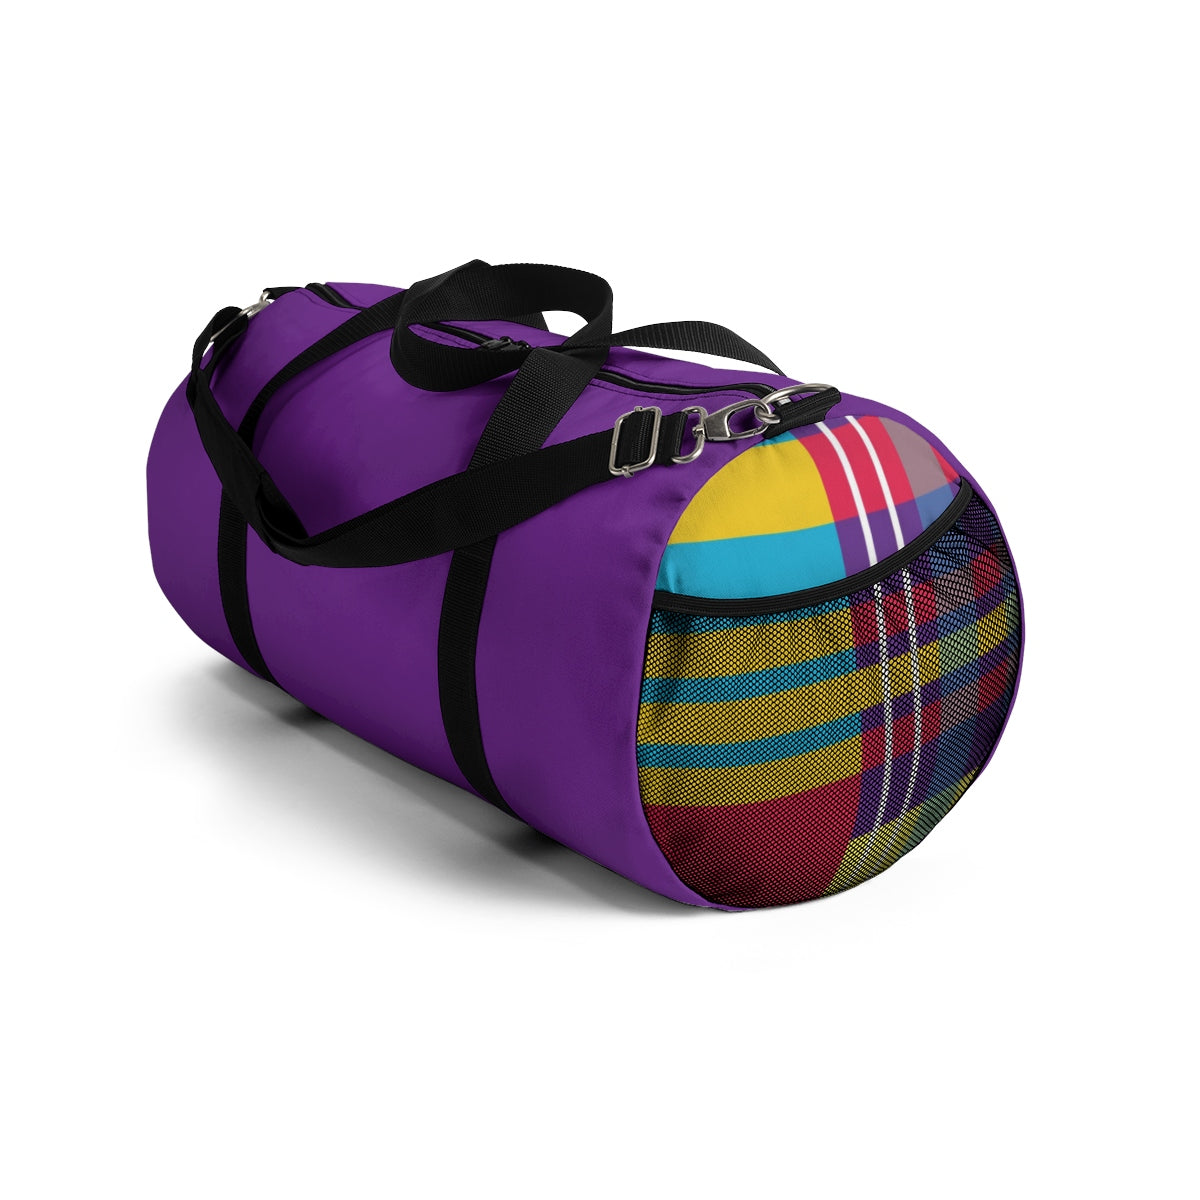 MERRY PLAID Duffel Bag (purple)